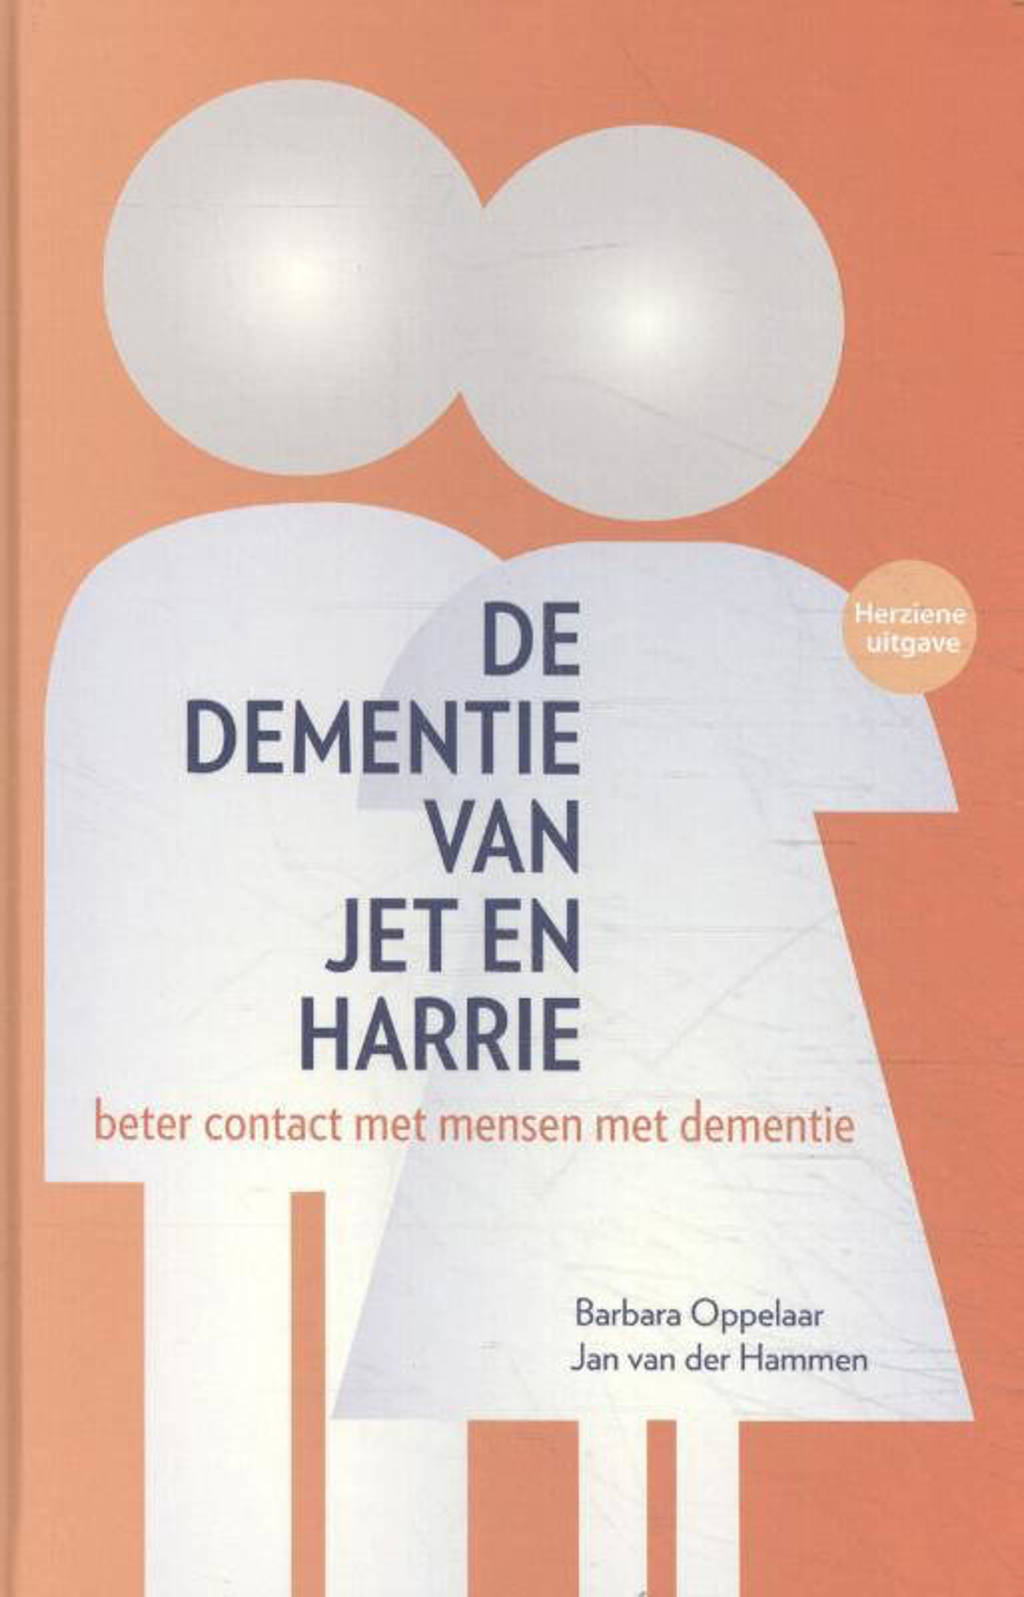 De dementie van Jet en Harrie - Barbara Oppelaar, Jan van der Hammen en Machteld Stilting